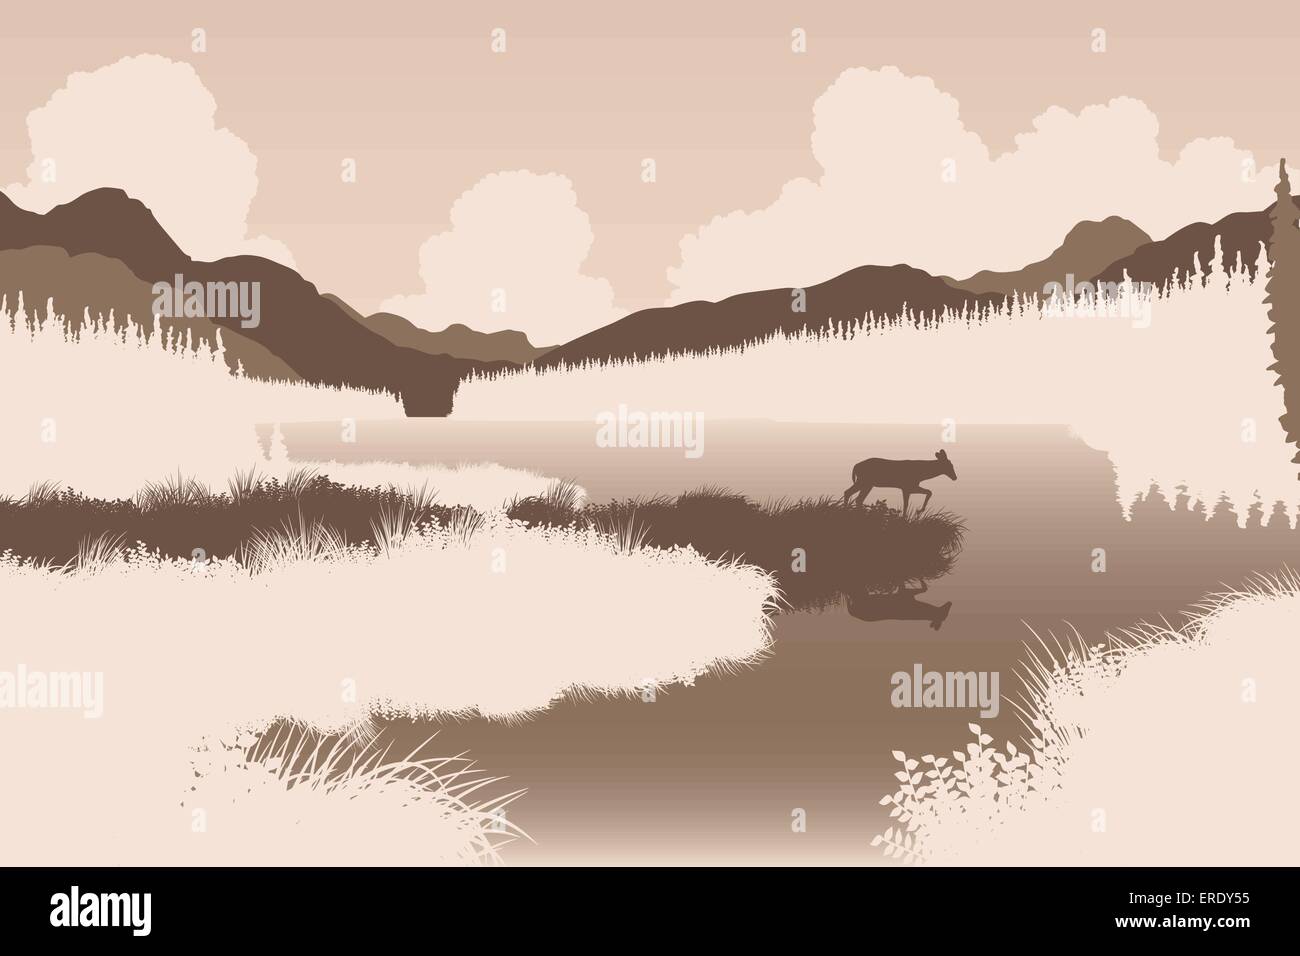 Spe8 illustration vectorielle modifiable d'un cerf dans un paysage sauvage avec l'animal comme un objet séparé Illustration de Vecteur